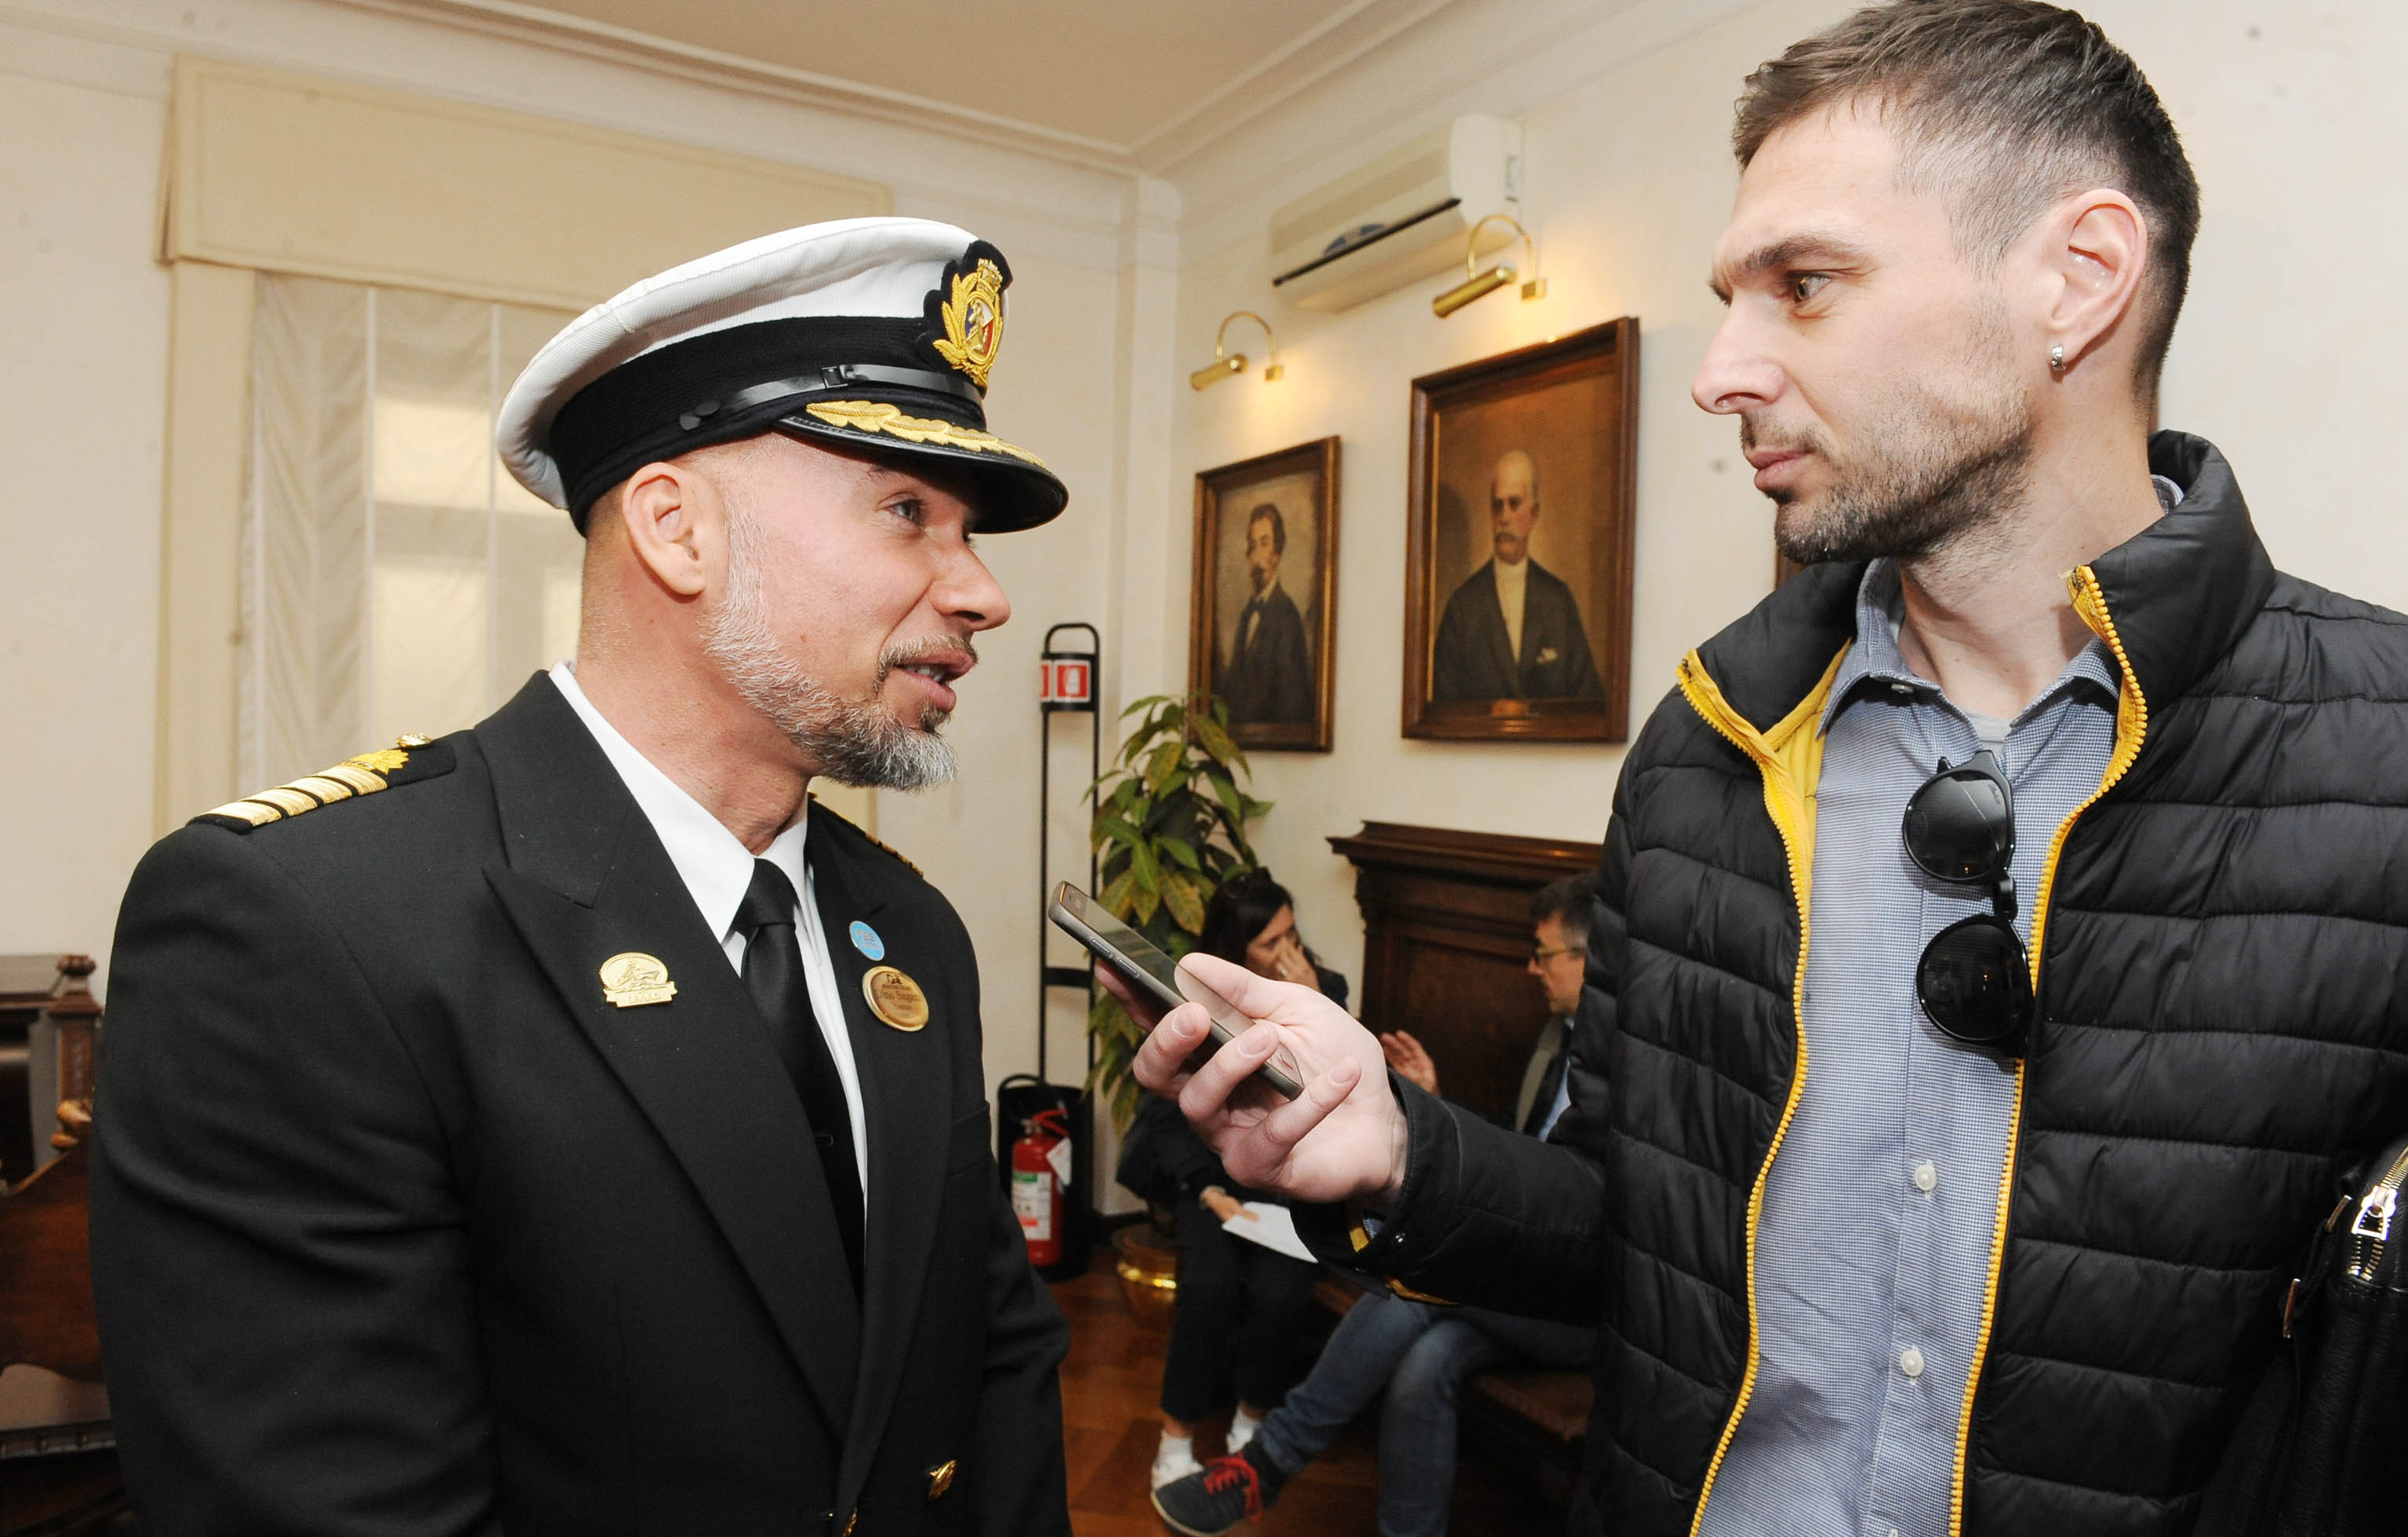 Naš novinar Marko Cvijanović u ugodnoj ćakuli s kapetanom Saganijem